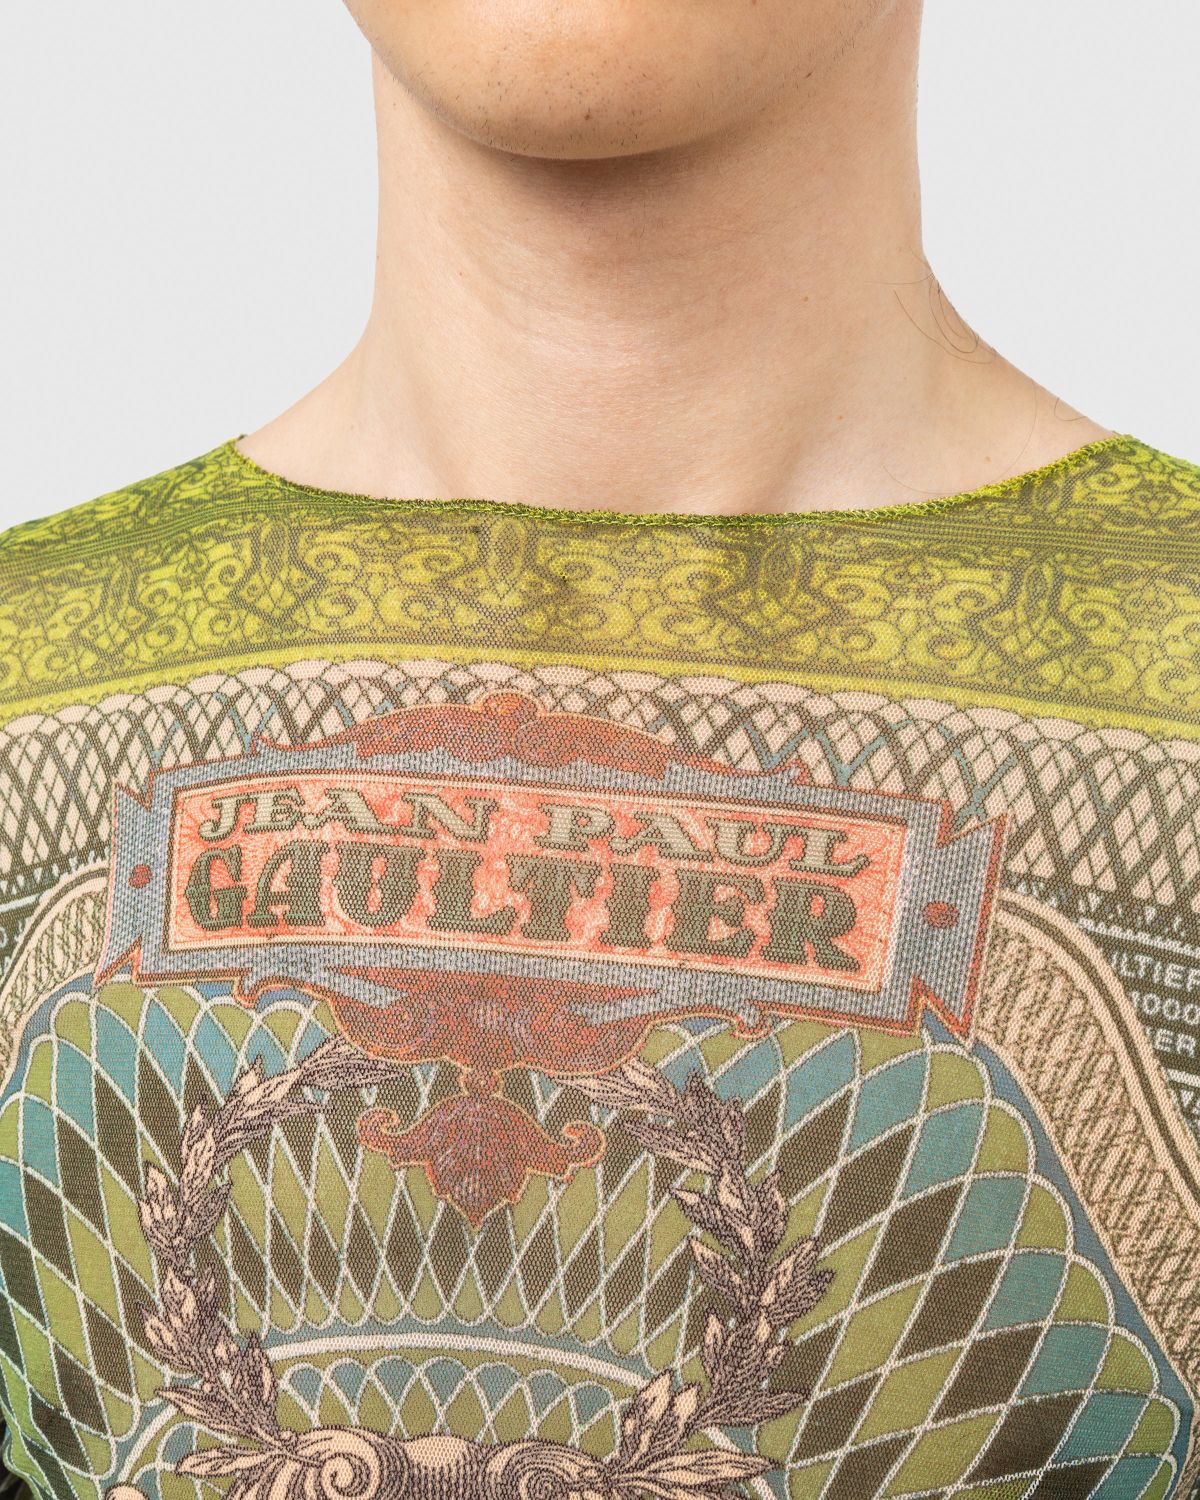 Jean Paul Gaultier – Long-Sleeve Banknote Top Multi - Sweats - Green - Image 4